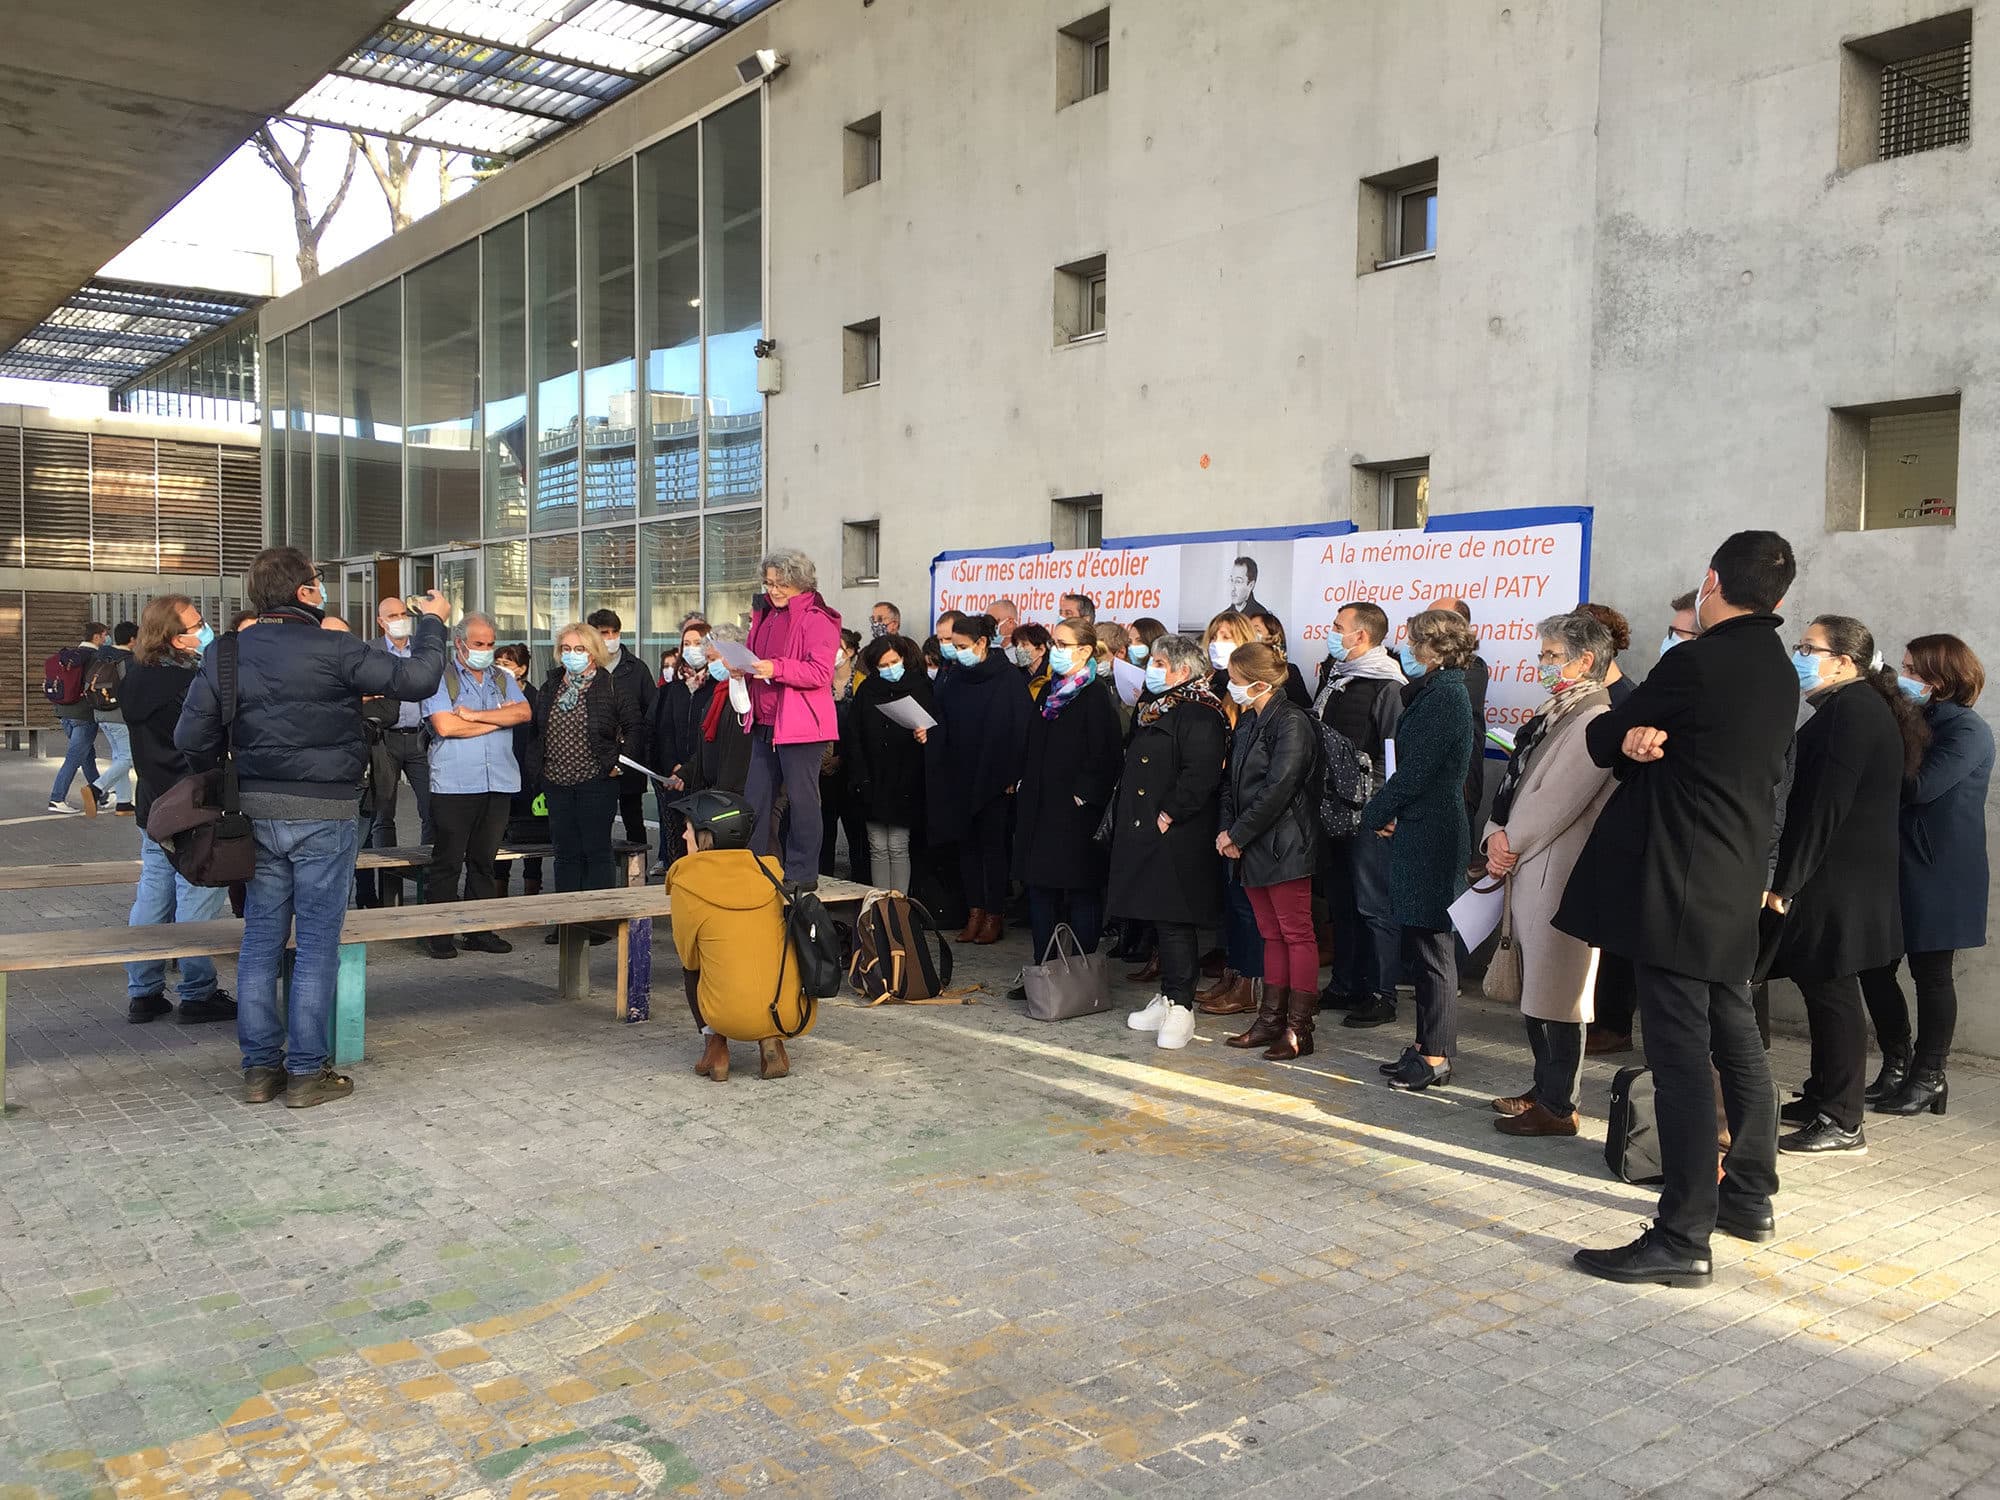 Mobilisation au lycée Magendie pour soutenir un enseignant accusé de propos homophobes par un élève